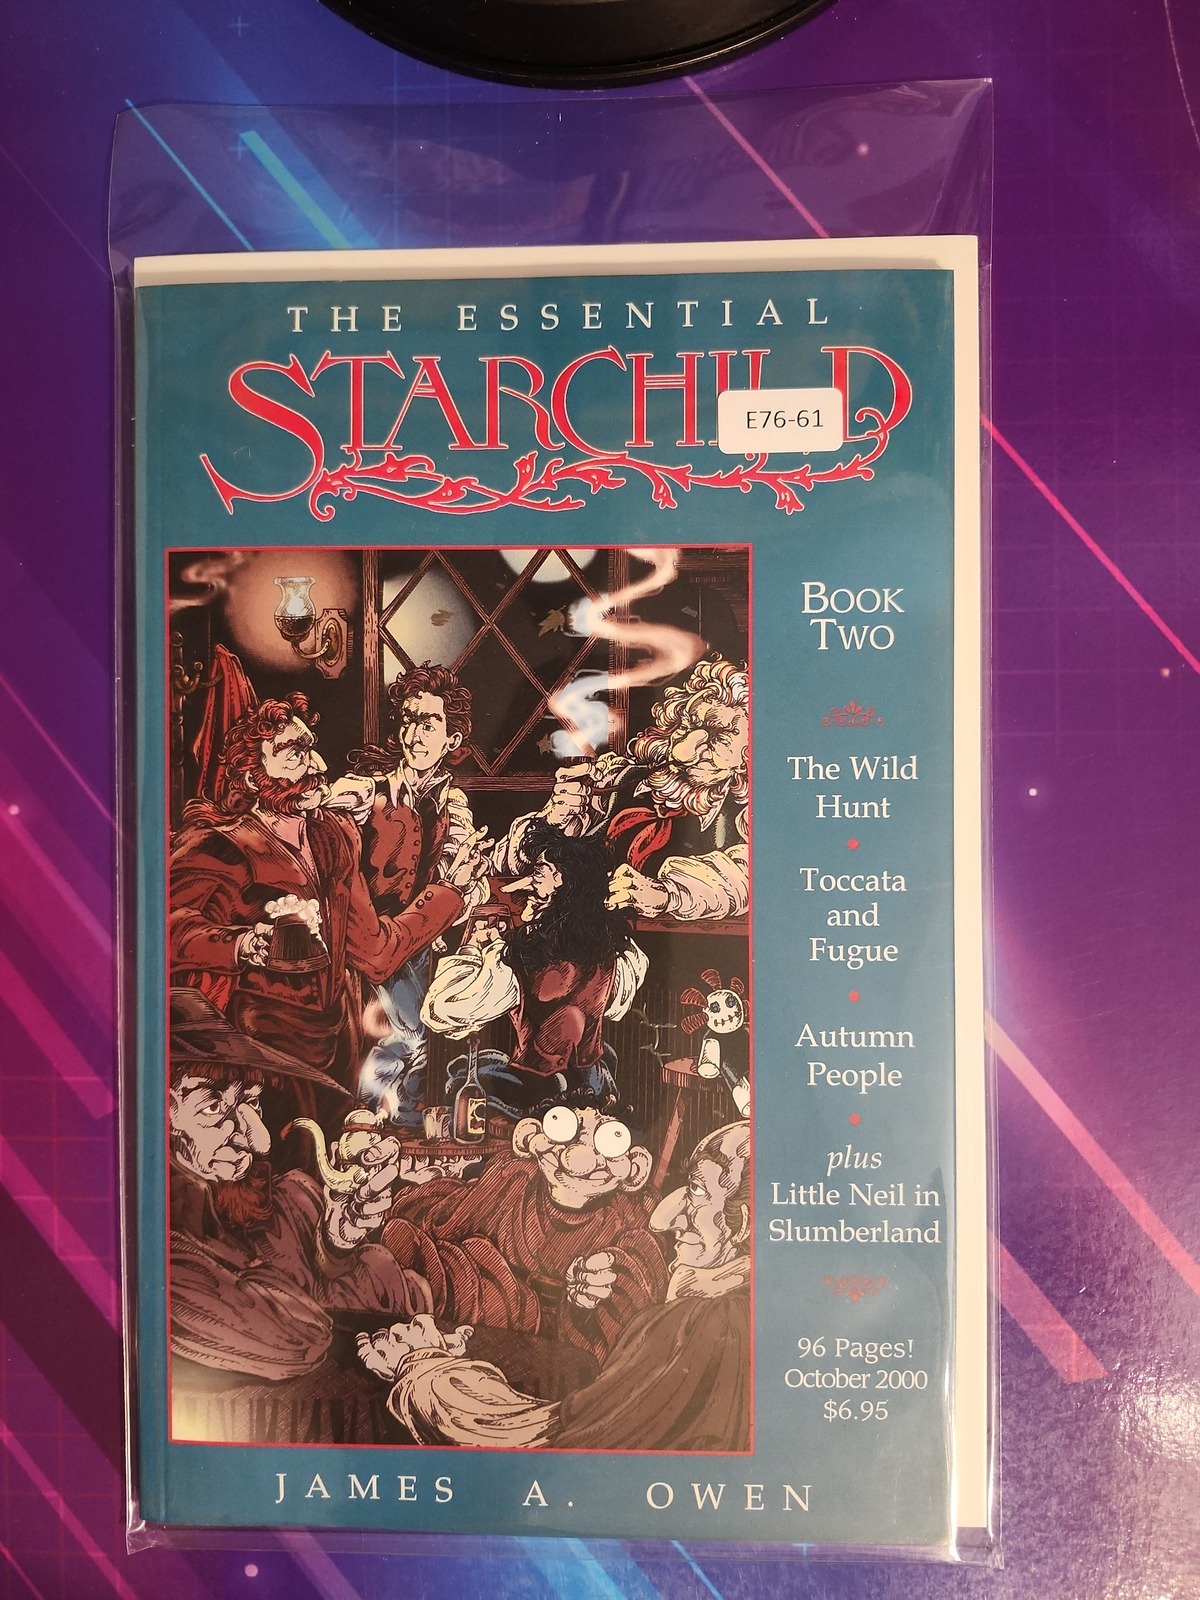 THE ESSENTIAL STARCHILD #2 8.0 COPPERVALE PRESS COMIC BOOK E76-61